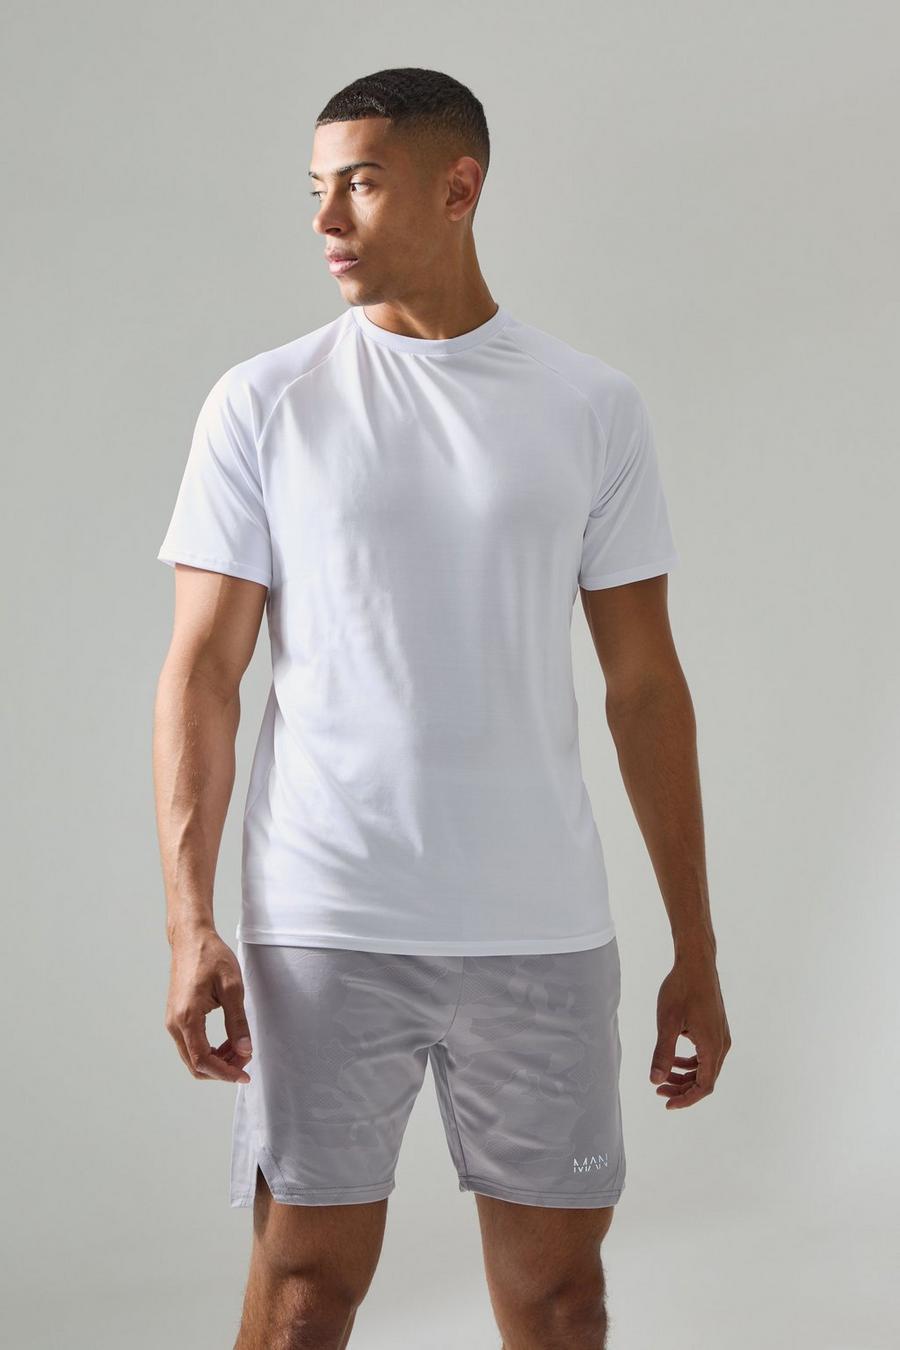 Man Active Lightweight Essentials Gym Raglan T-Shirt, White